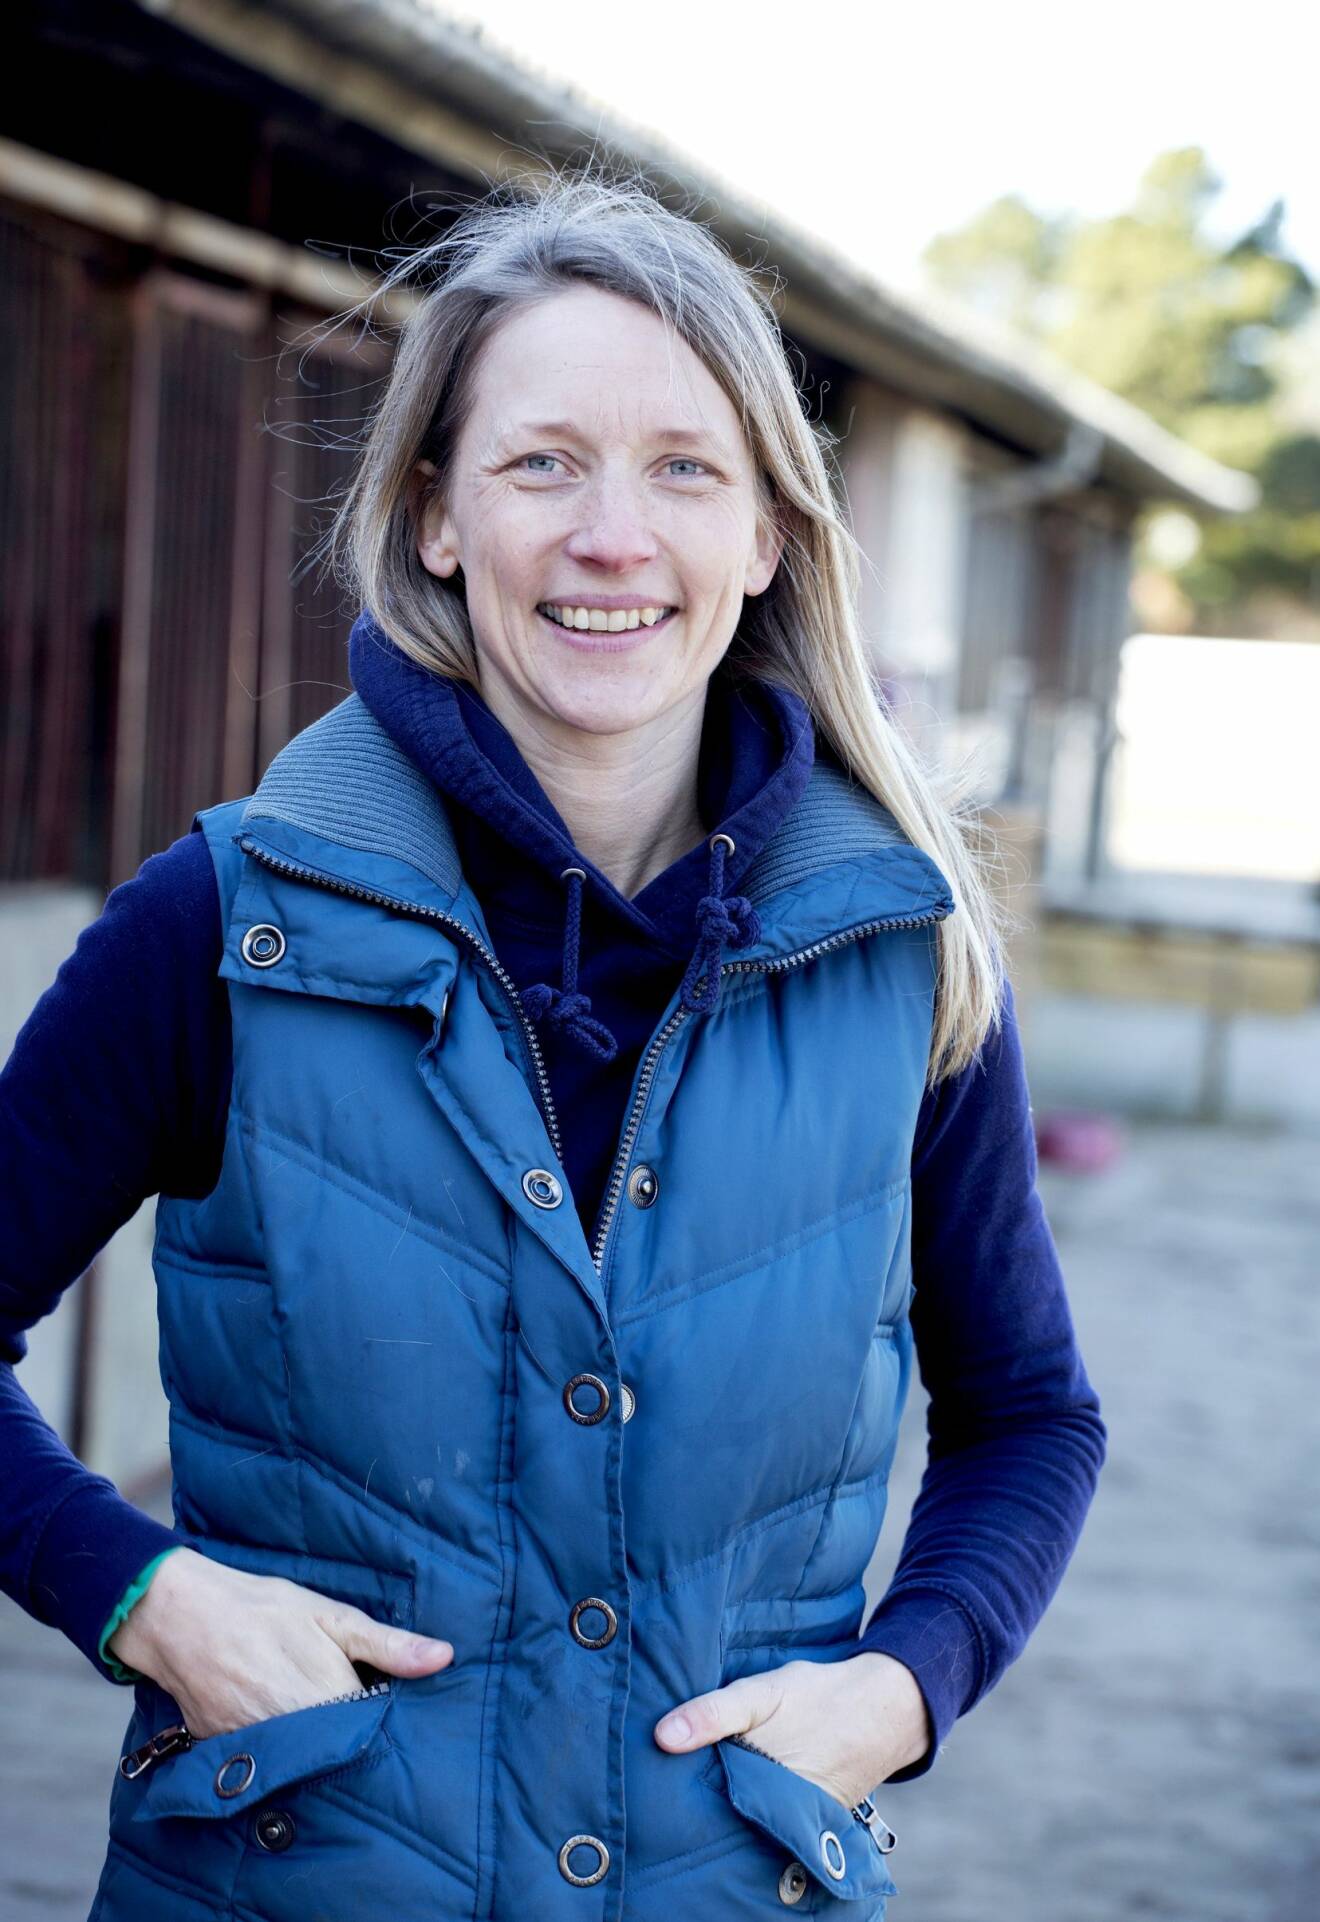 I 14 generationer har Annes släkt bott på Römö utanför den danska västkusten. Att hon själv skulle föra traditionen vidare på sin barndoms ö trodde hon inte. Efter avslutad utbildning styrde hon kosan till Grönland. I dag jobbar hon på Thomsens ridecenter på Römö.